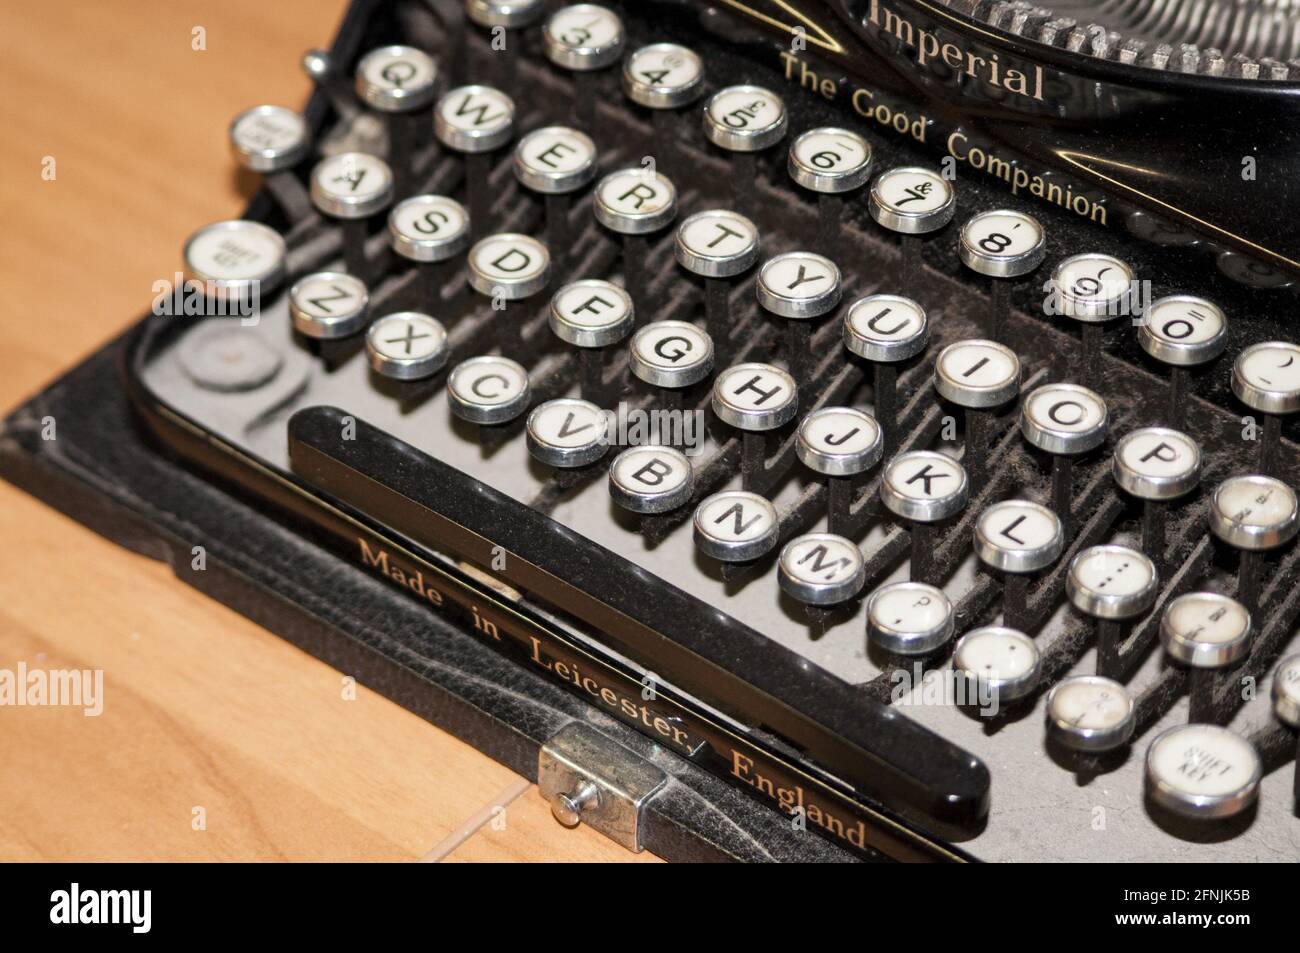 Wooden Black Typewriter Keys